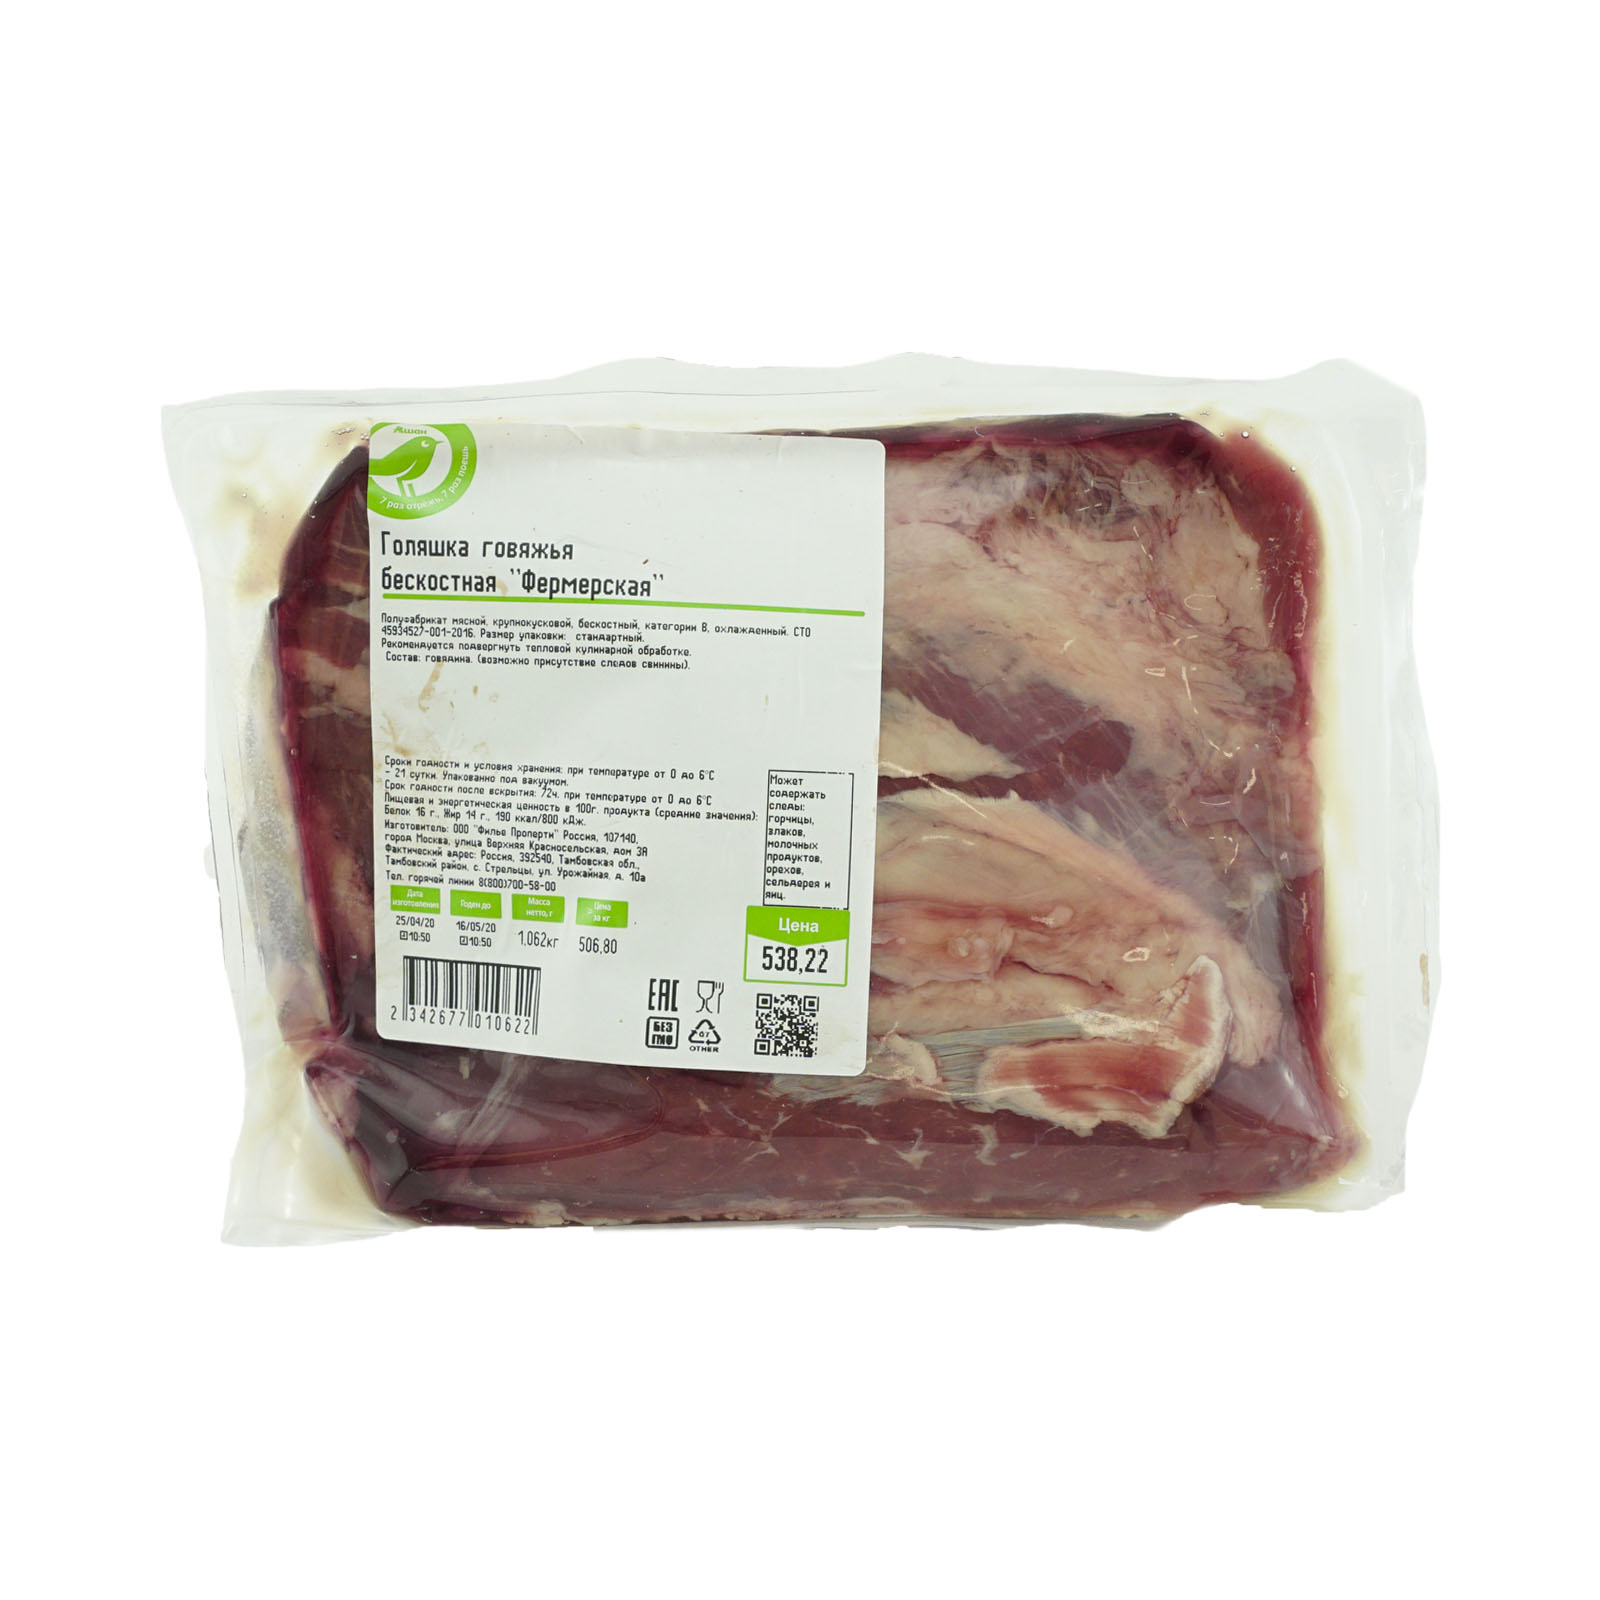 Голяшка говяжья «Каждый день» бескостная охлажденная (0,8-1,2 кг), 1 упаковка  1 кг